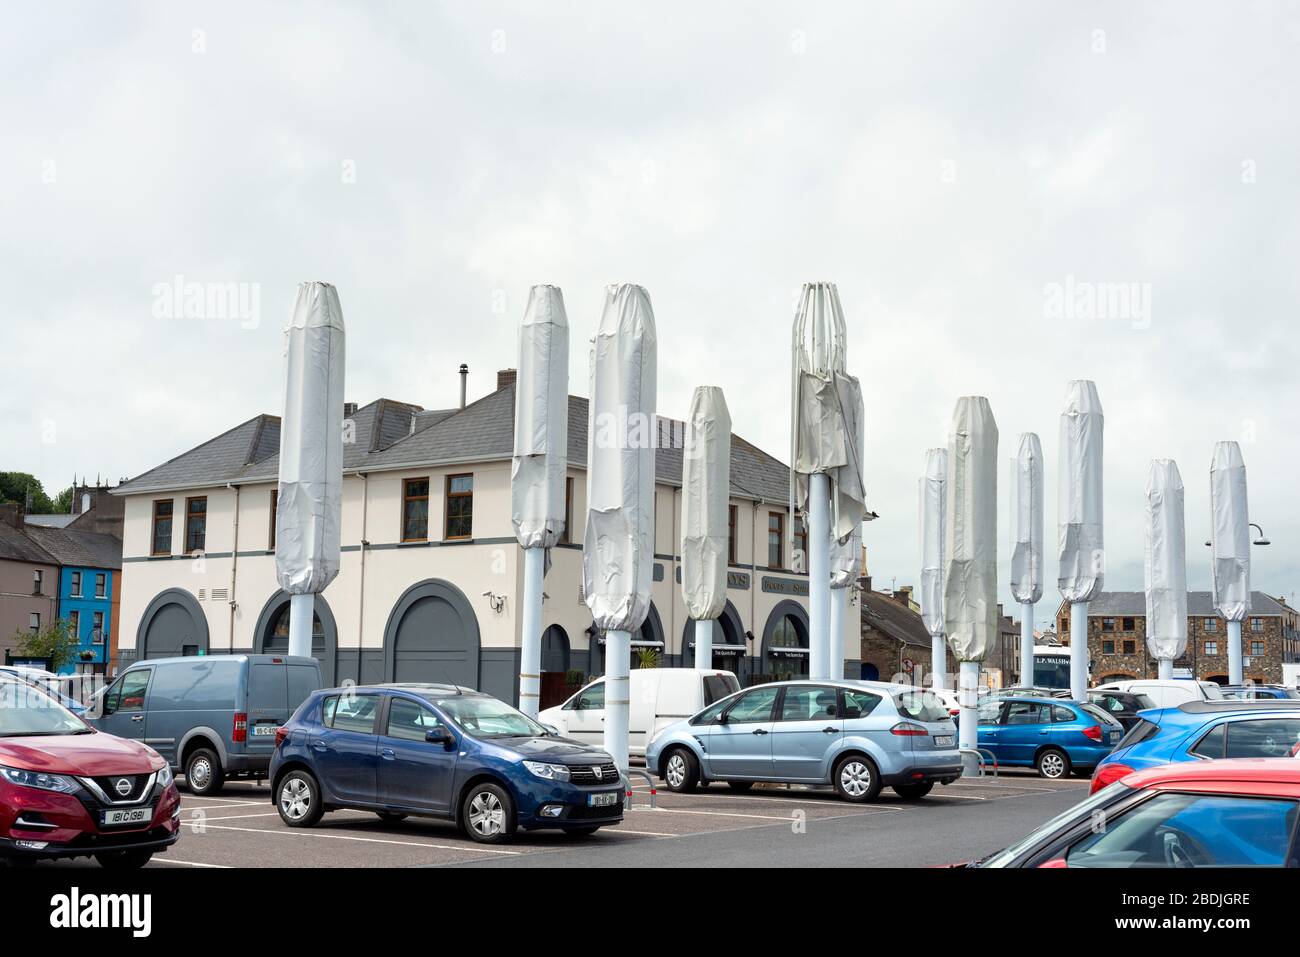 Geparkte Autos auf dem Parkplatz Quays oder Nealon's Quayside Parkplatz mit großen zusammengeklappten Tulip Architekturschirmen in Youghal, Irland, seit 2018 Stockfoto